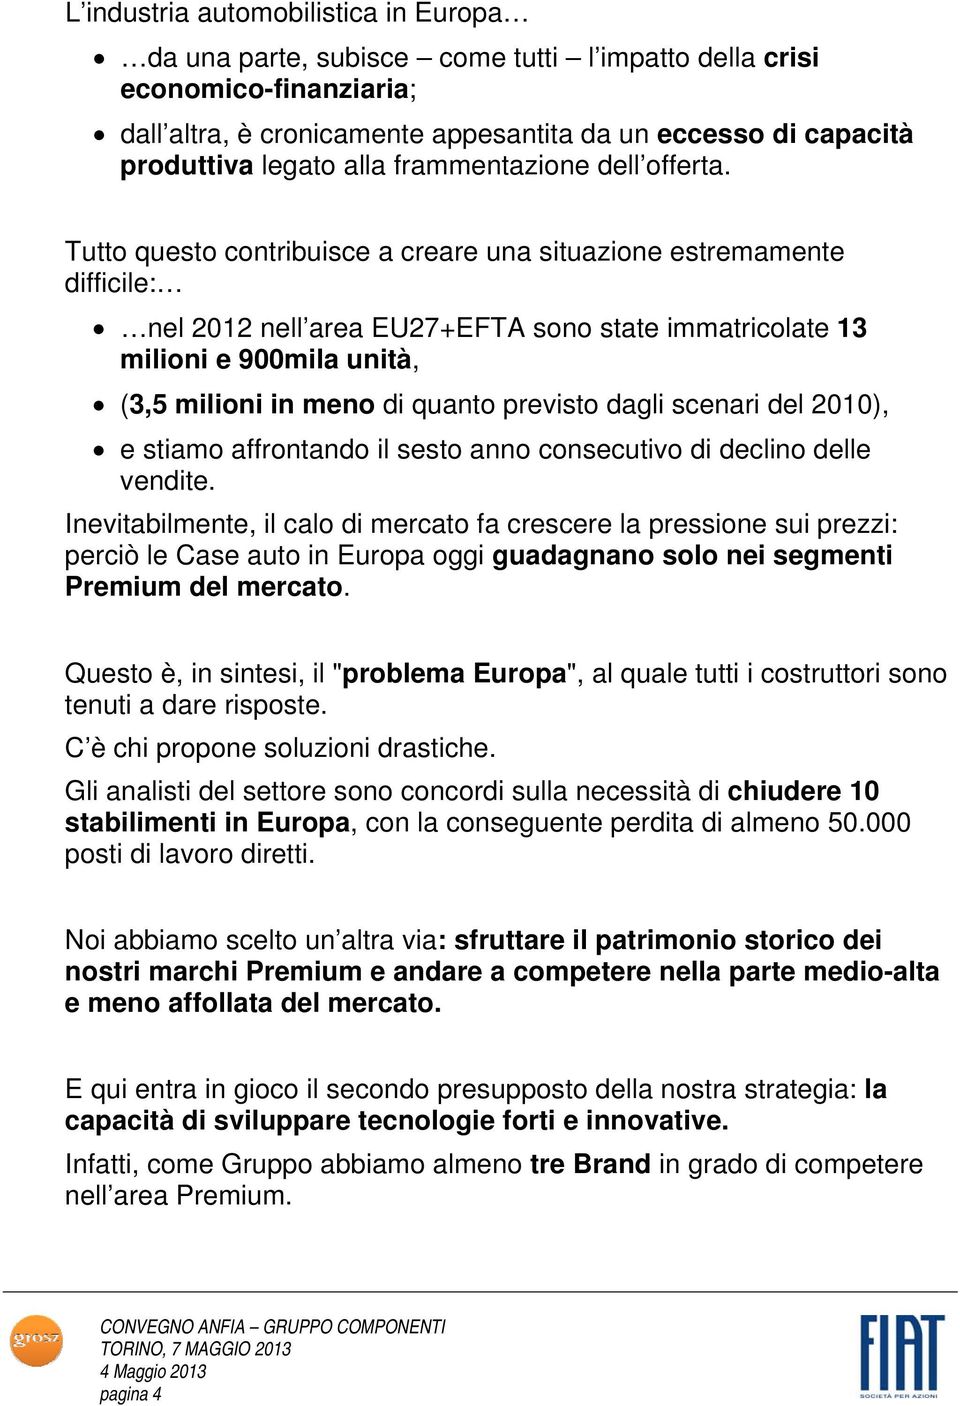 Tutto questo contribuisce a creare una situazione estremamente difficile: nel 2012 nell area EU27+EFTA sono state immatricolate 13 milioni e 900mila unità, (3,5 milioni in meno di quanto previsto